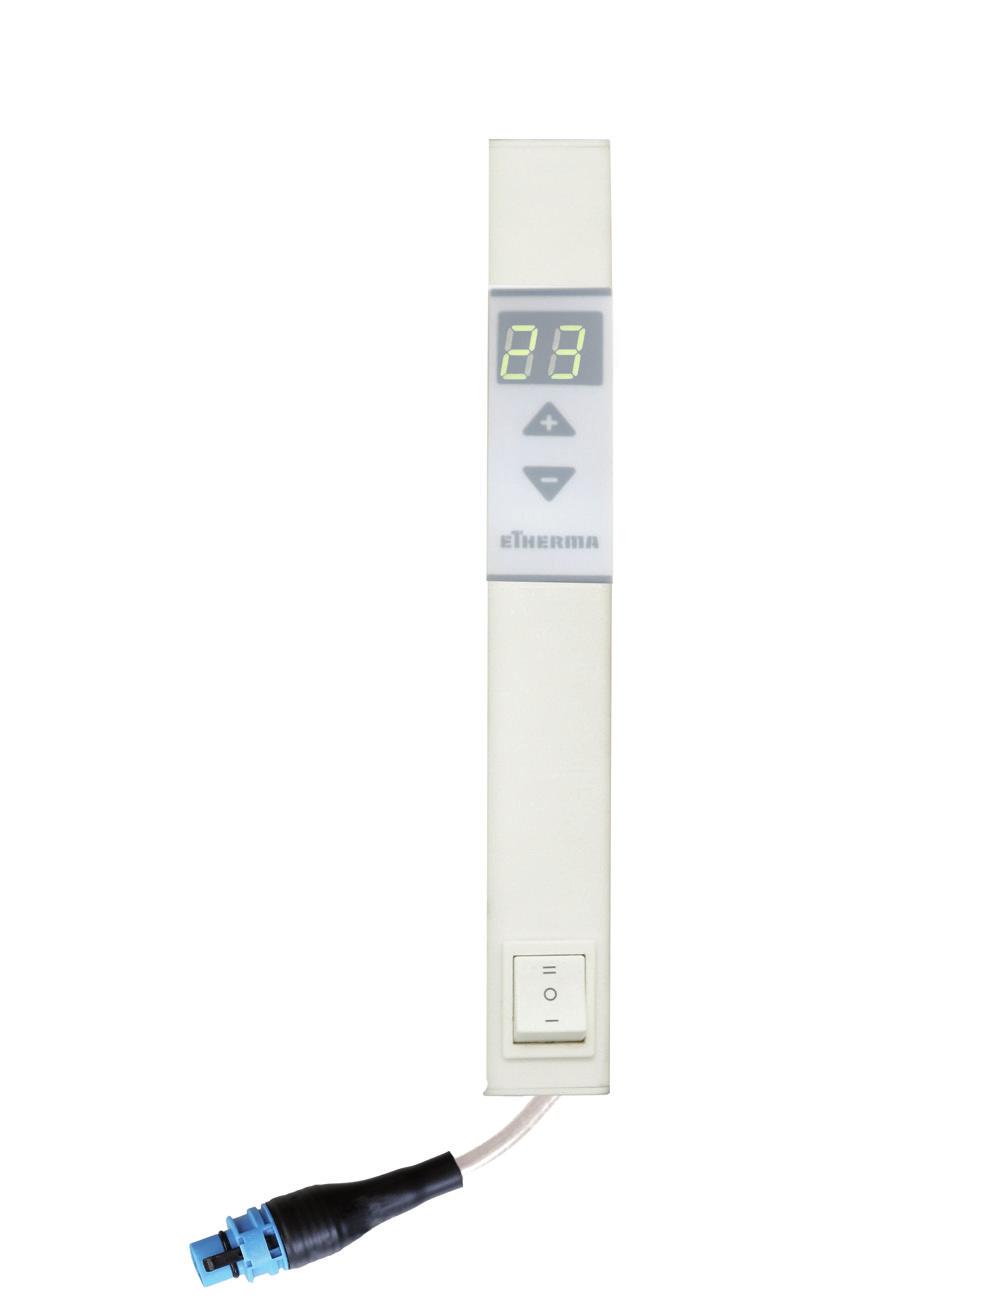 Das Thermostat regelt die Raumtemperatur und optimiert die Oberflächentemperatur des LAVA. Weiters kann die Oberflächentemperatur z.b. in Kinder- und Badezimmern mit einem Schalter auf 60 C limitiert werden.